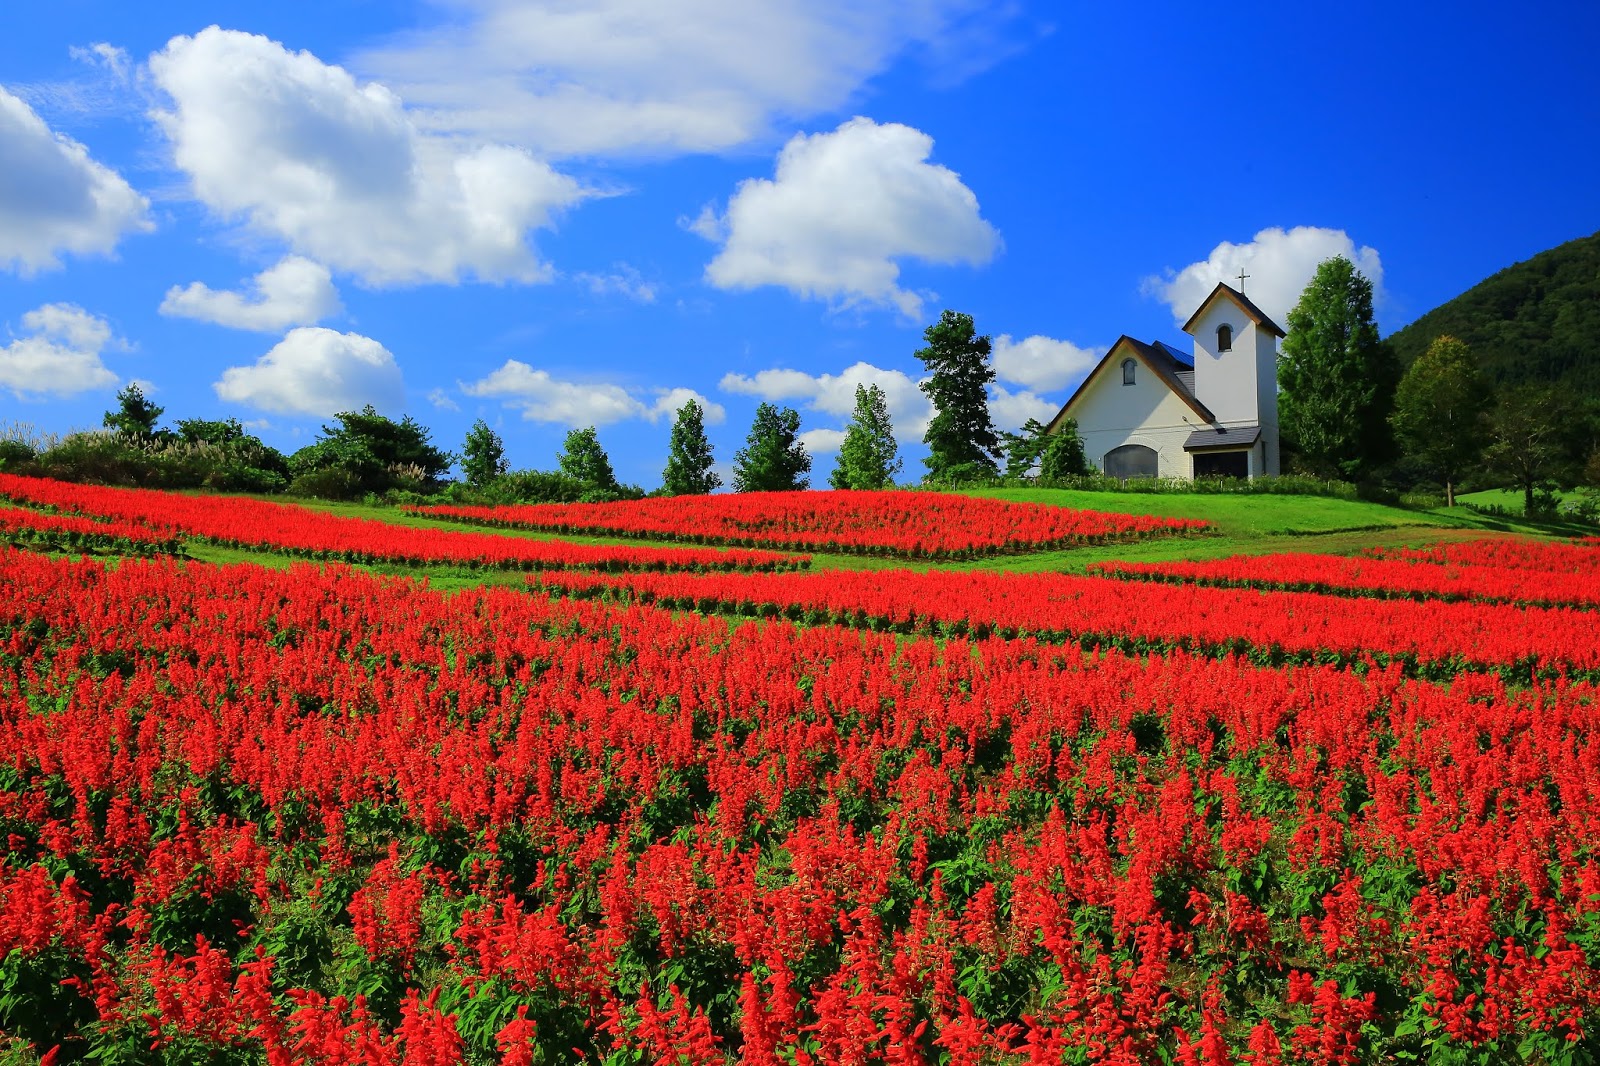 Banco de Imágenes Gratis: Fotografías de campos floridos - Amazing Flowers  Field - Flores de colores